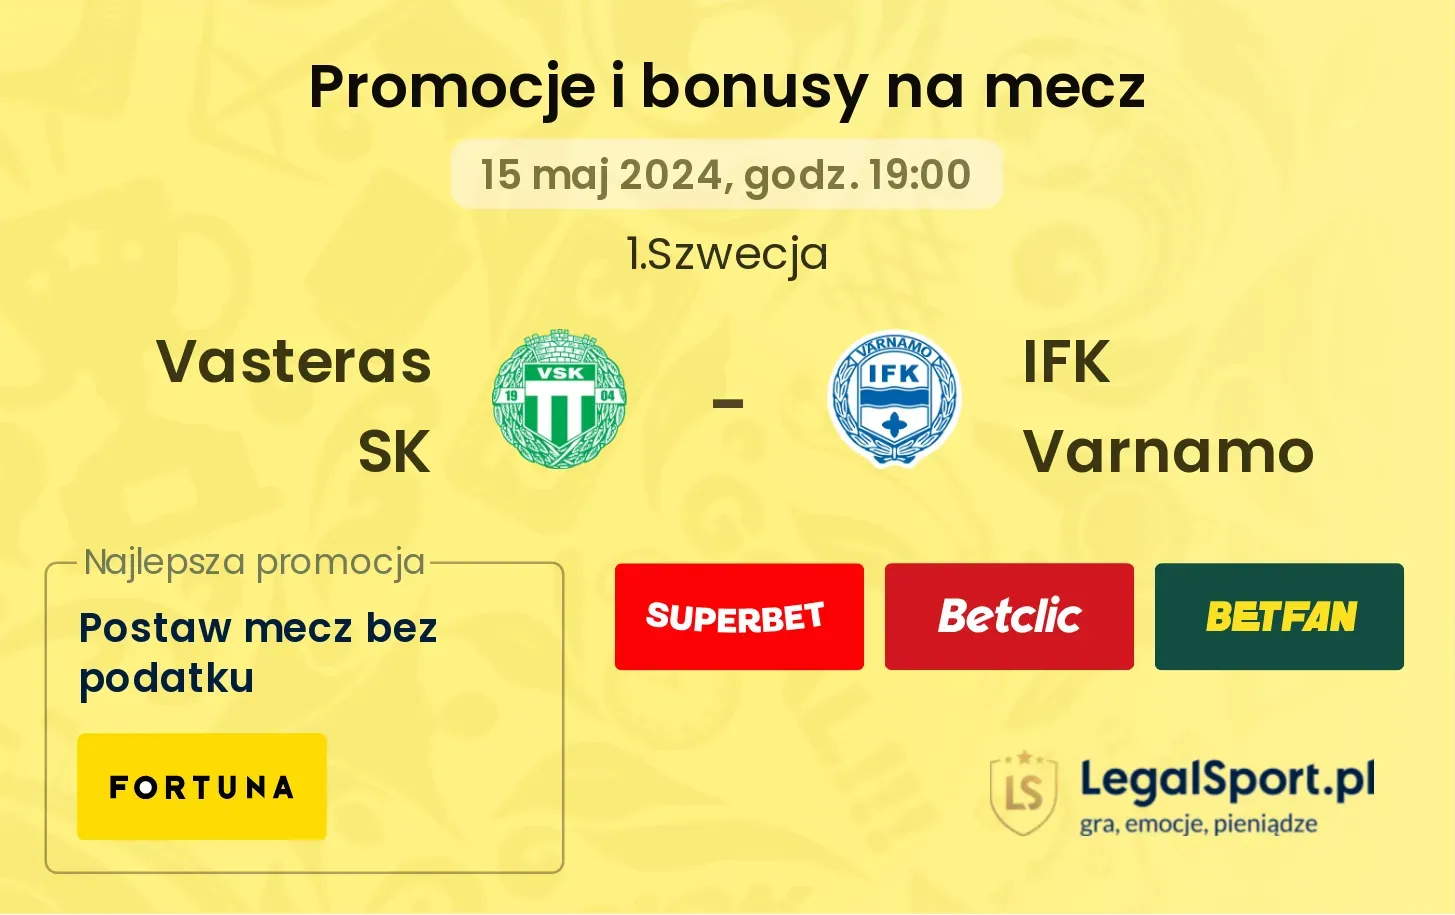 Vasteras SK - IFK Varnamo promocje bonusy na mecz